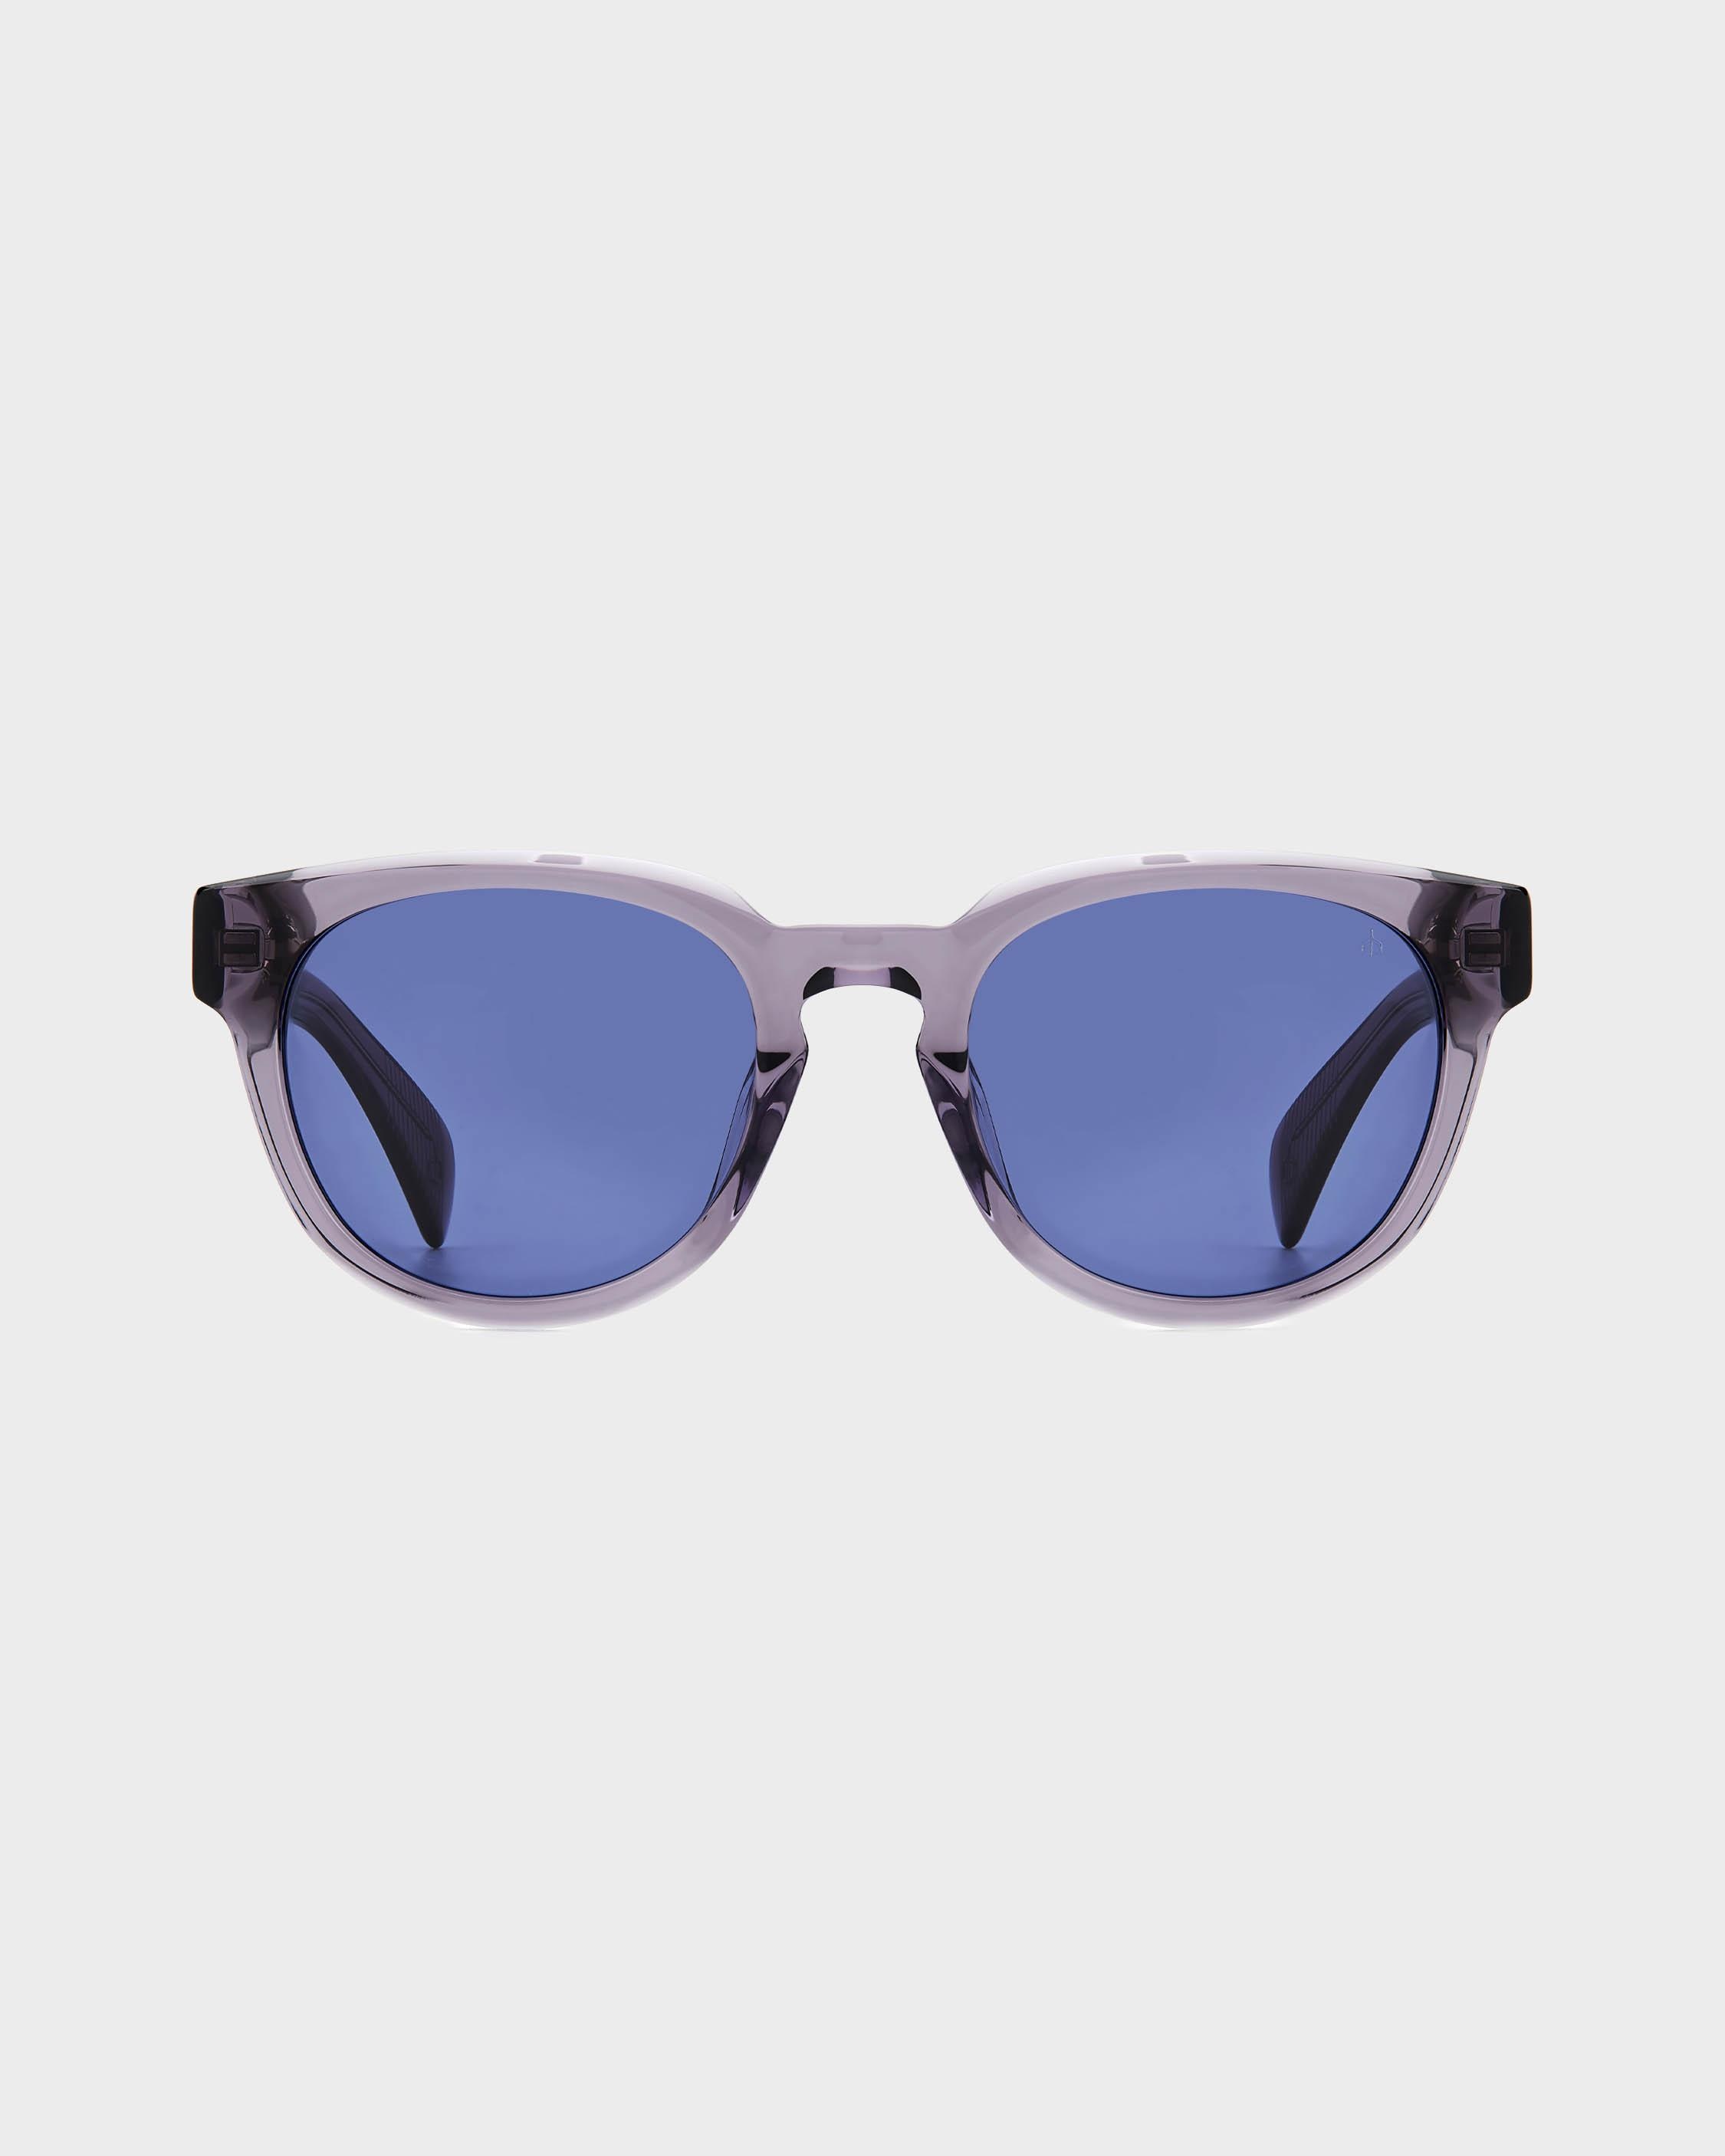 Slayton
Oval Sunglasses - 2